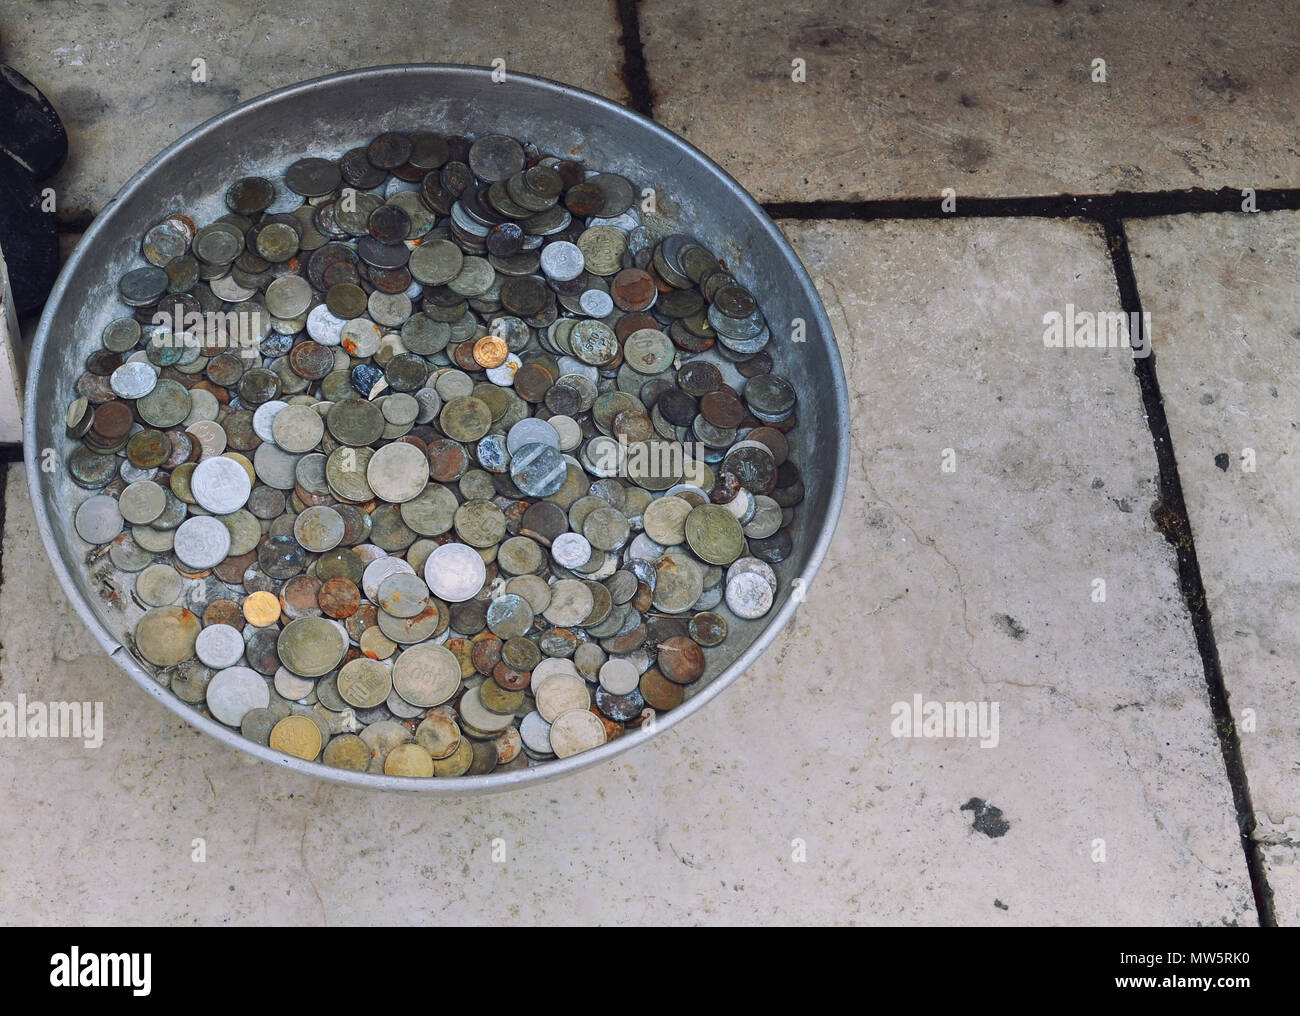 Eine Streuung von alten Münzen in Dose Ware auf dem Steinboden. Stockfoto